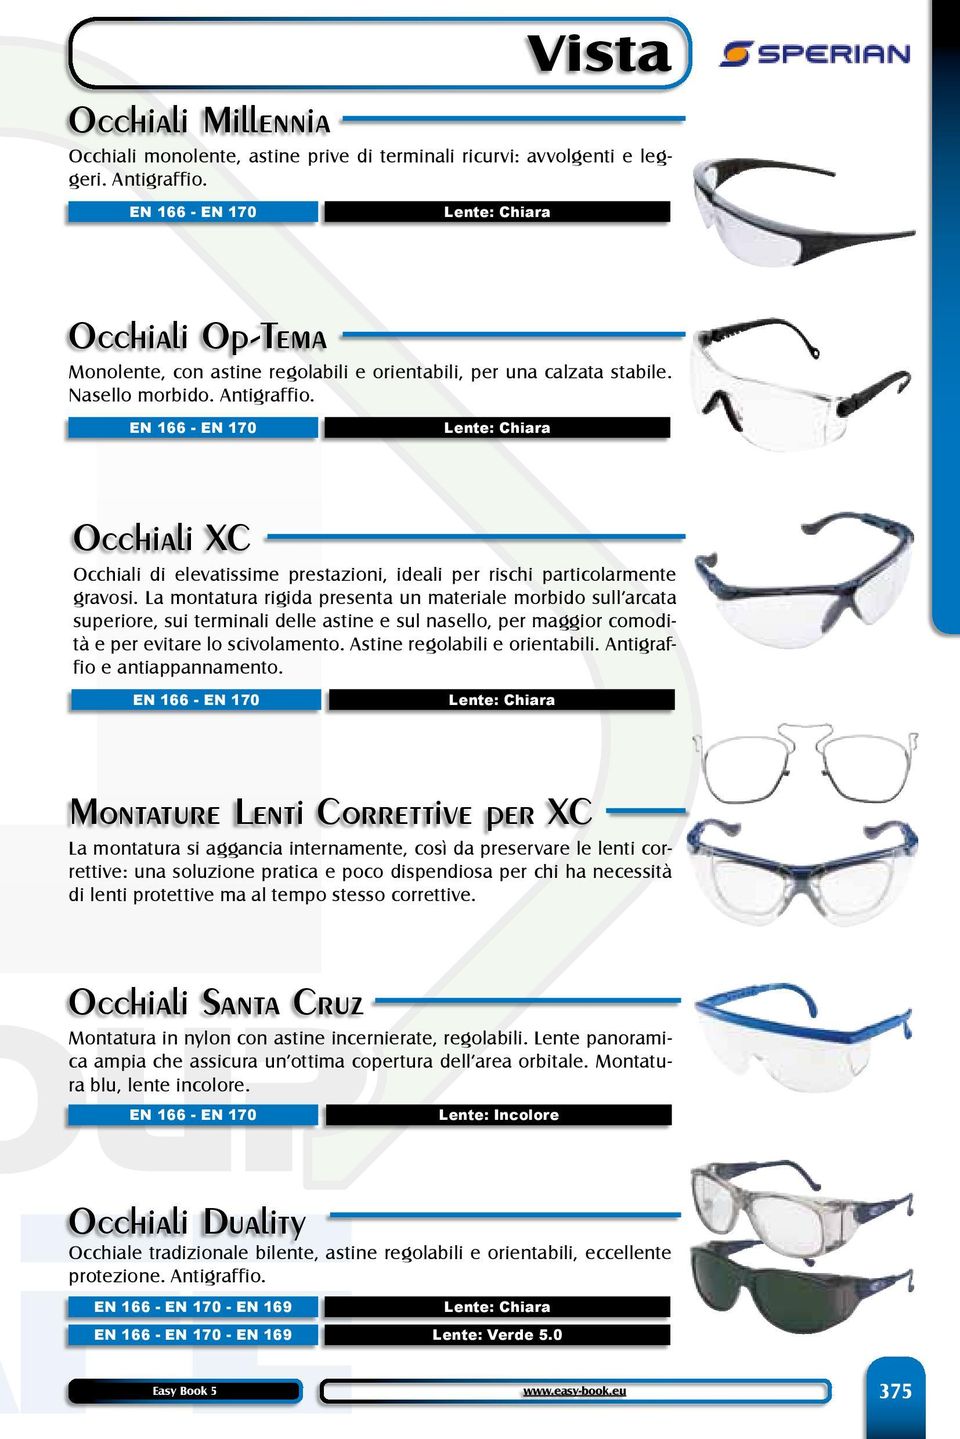 - EN 170 Occhiali XC Occhiali di elevatissime prestazioni, ideali per rischi particolarmente gravosi.